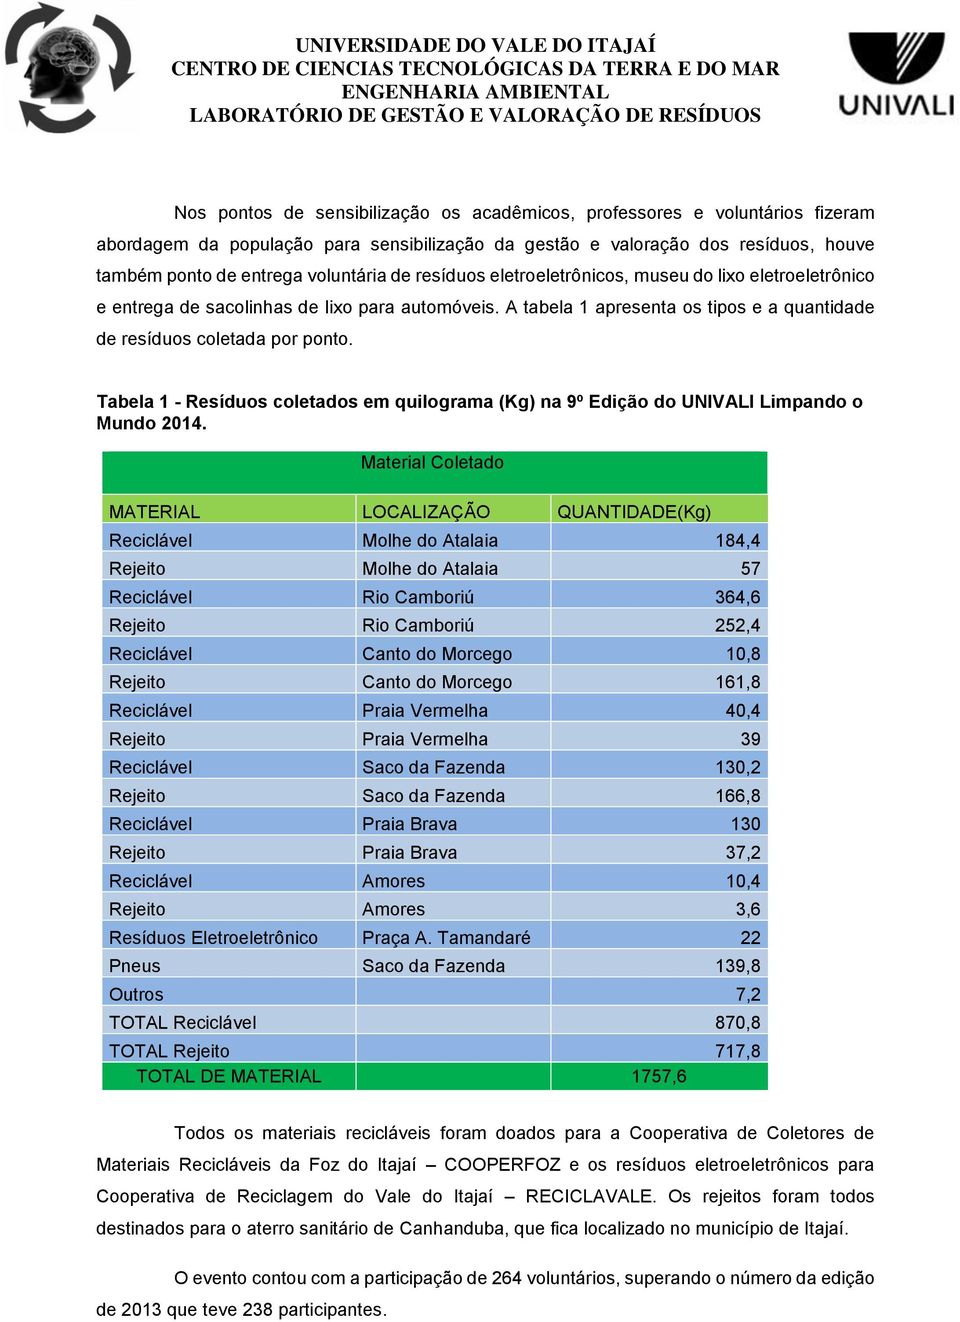 Tabela 1 - Resíduos coletados em quilograma (Kg) na 9º Edição do UNIVALI Limpando o Mundo 2014.